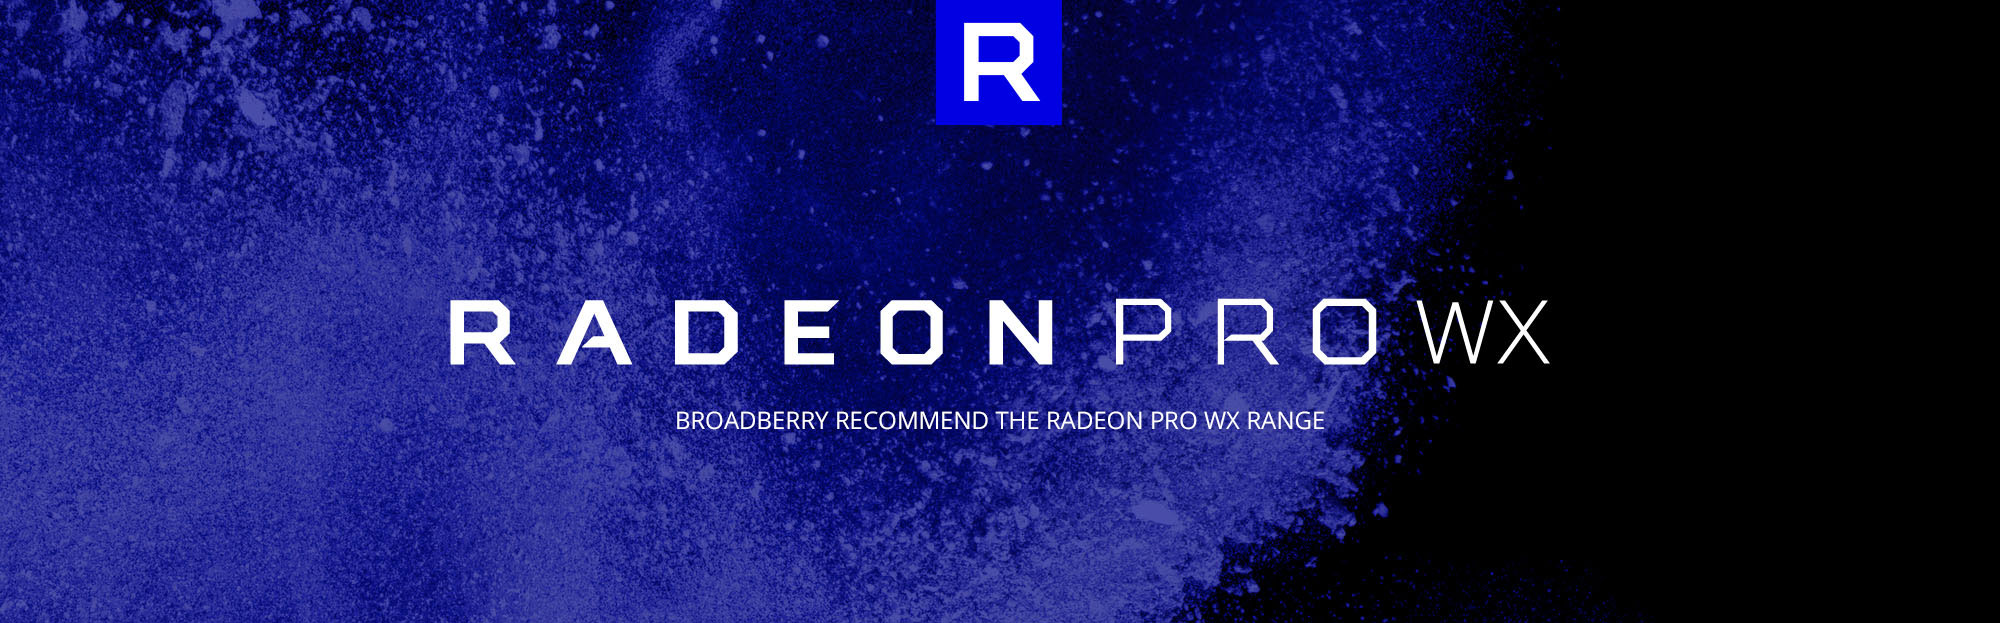 Radeon PRO WX